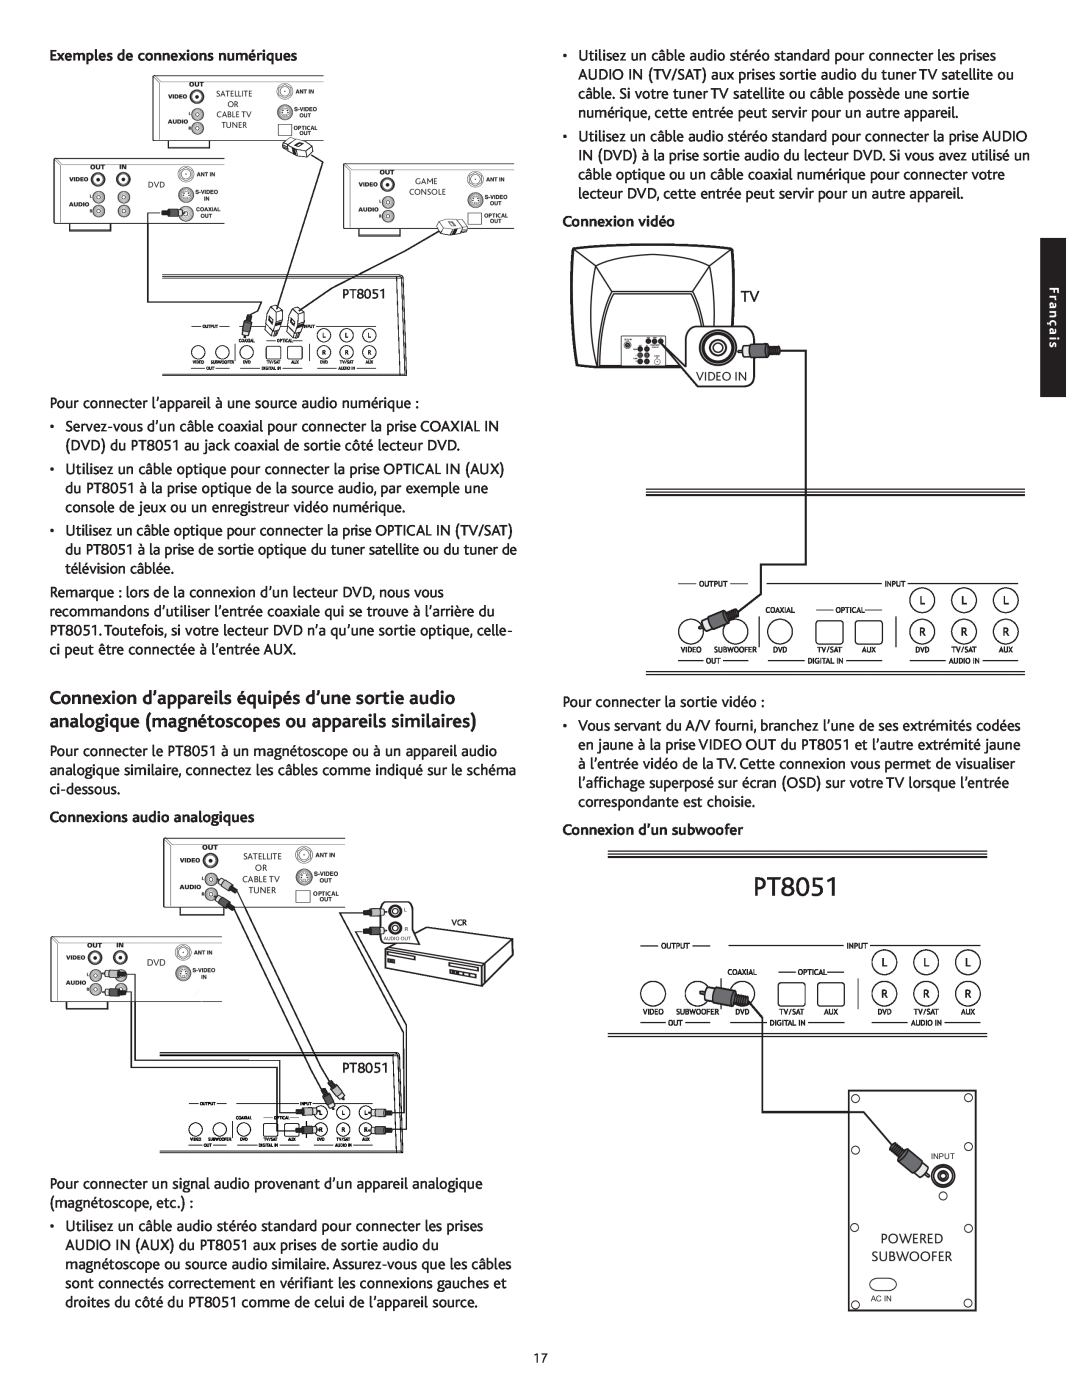 Altec Lansing PT8051 manual Exemples de connexions numériques, Connexions audio analogiques, Connexion vidéo 